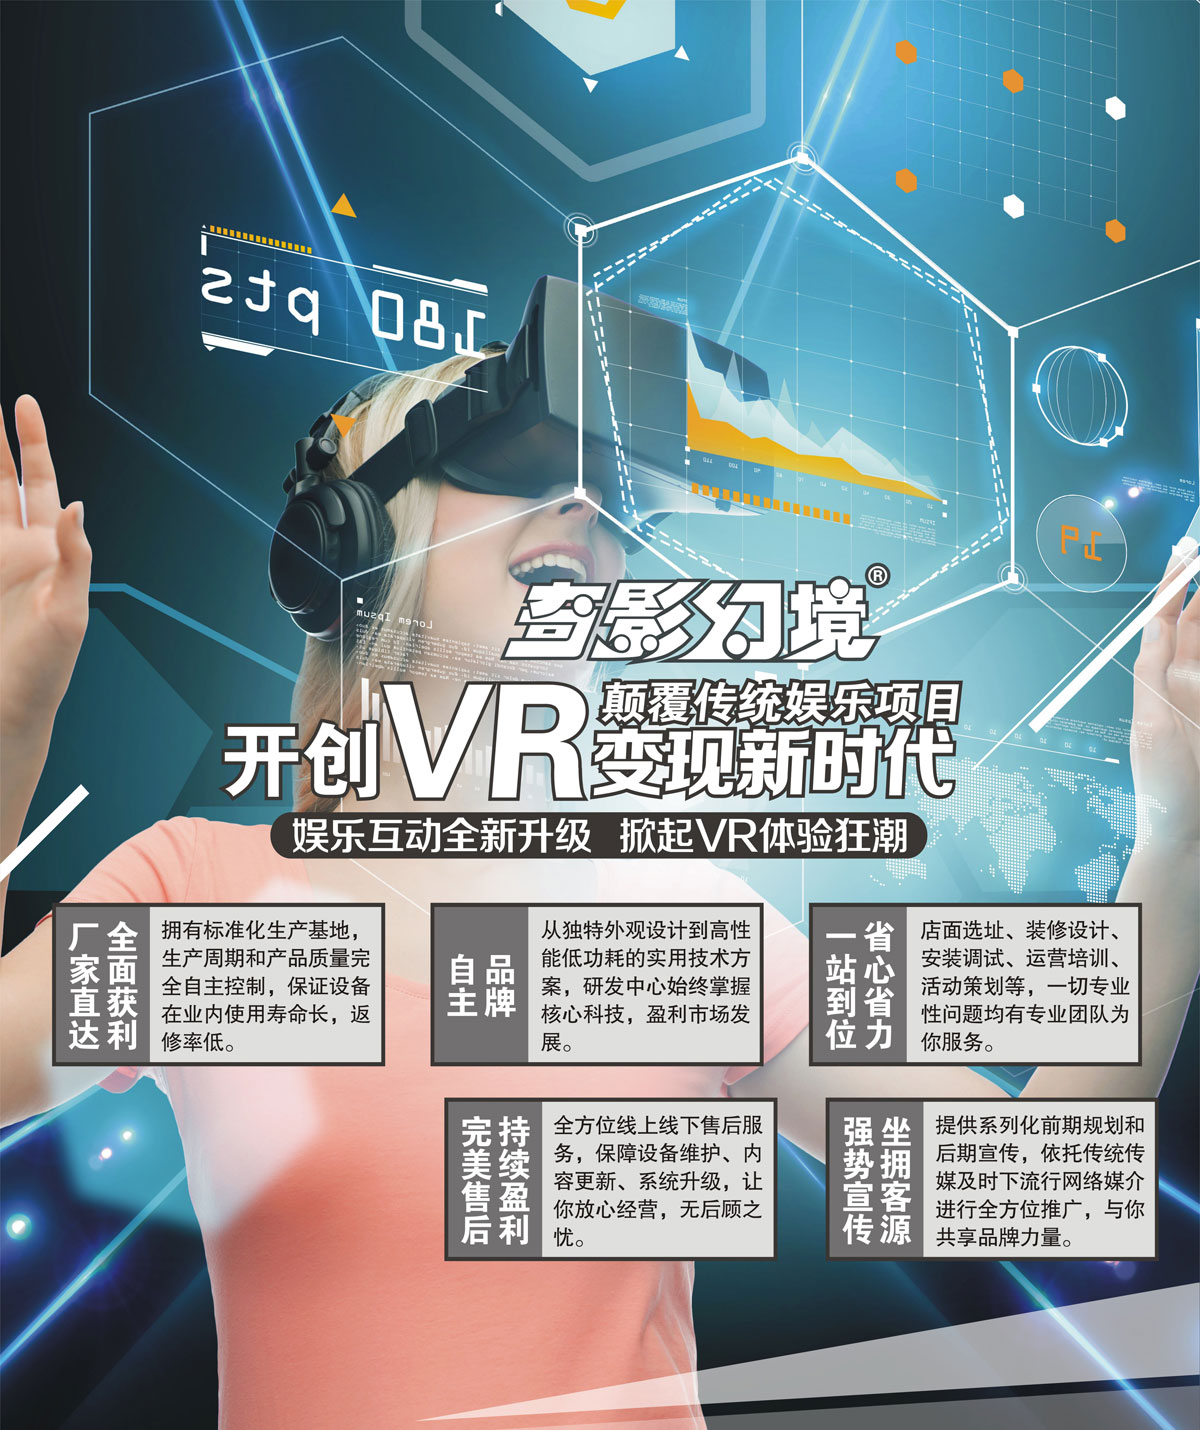 特效电影开创VR变现新时代颠覆传统娱乐项目.jpg